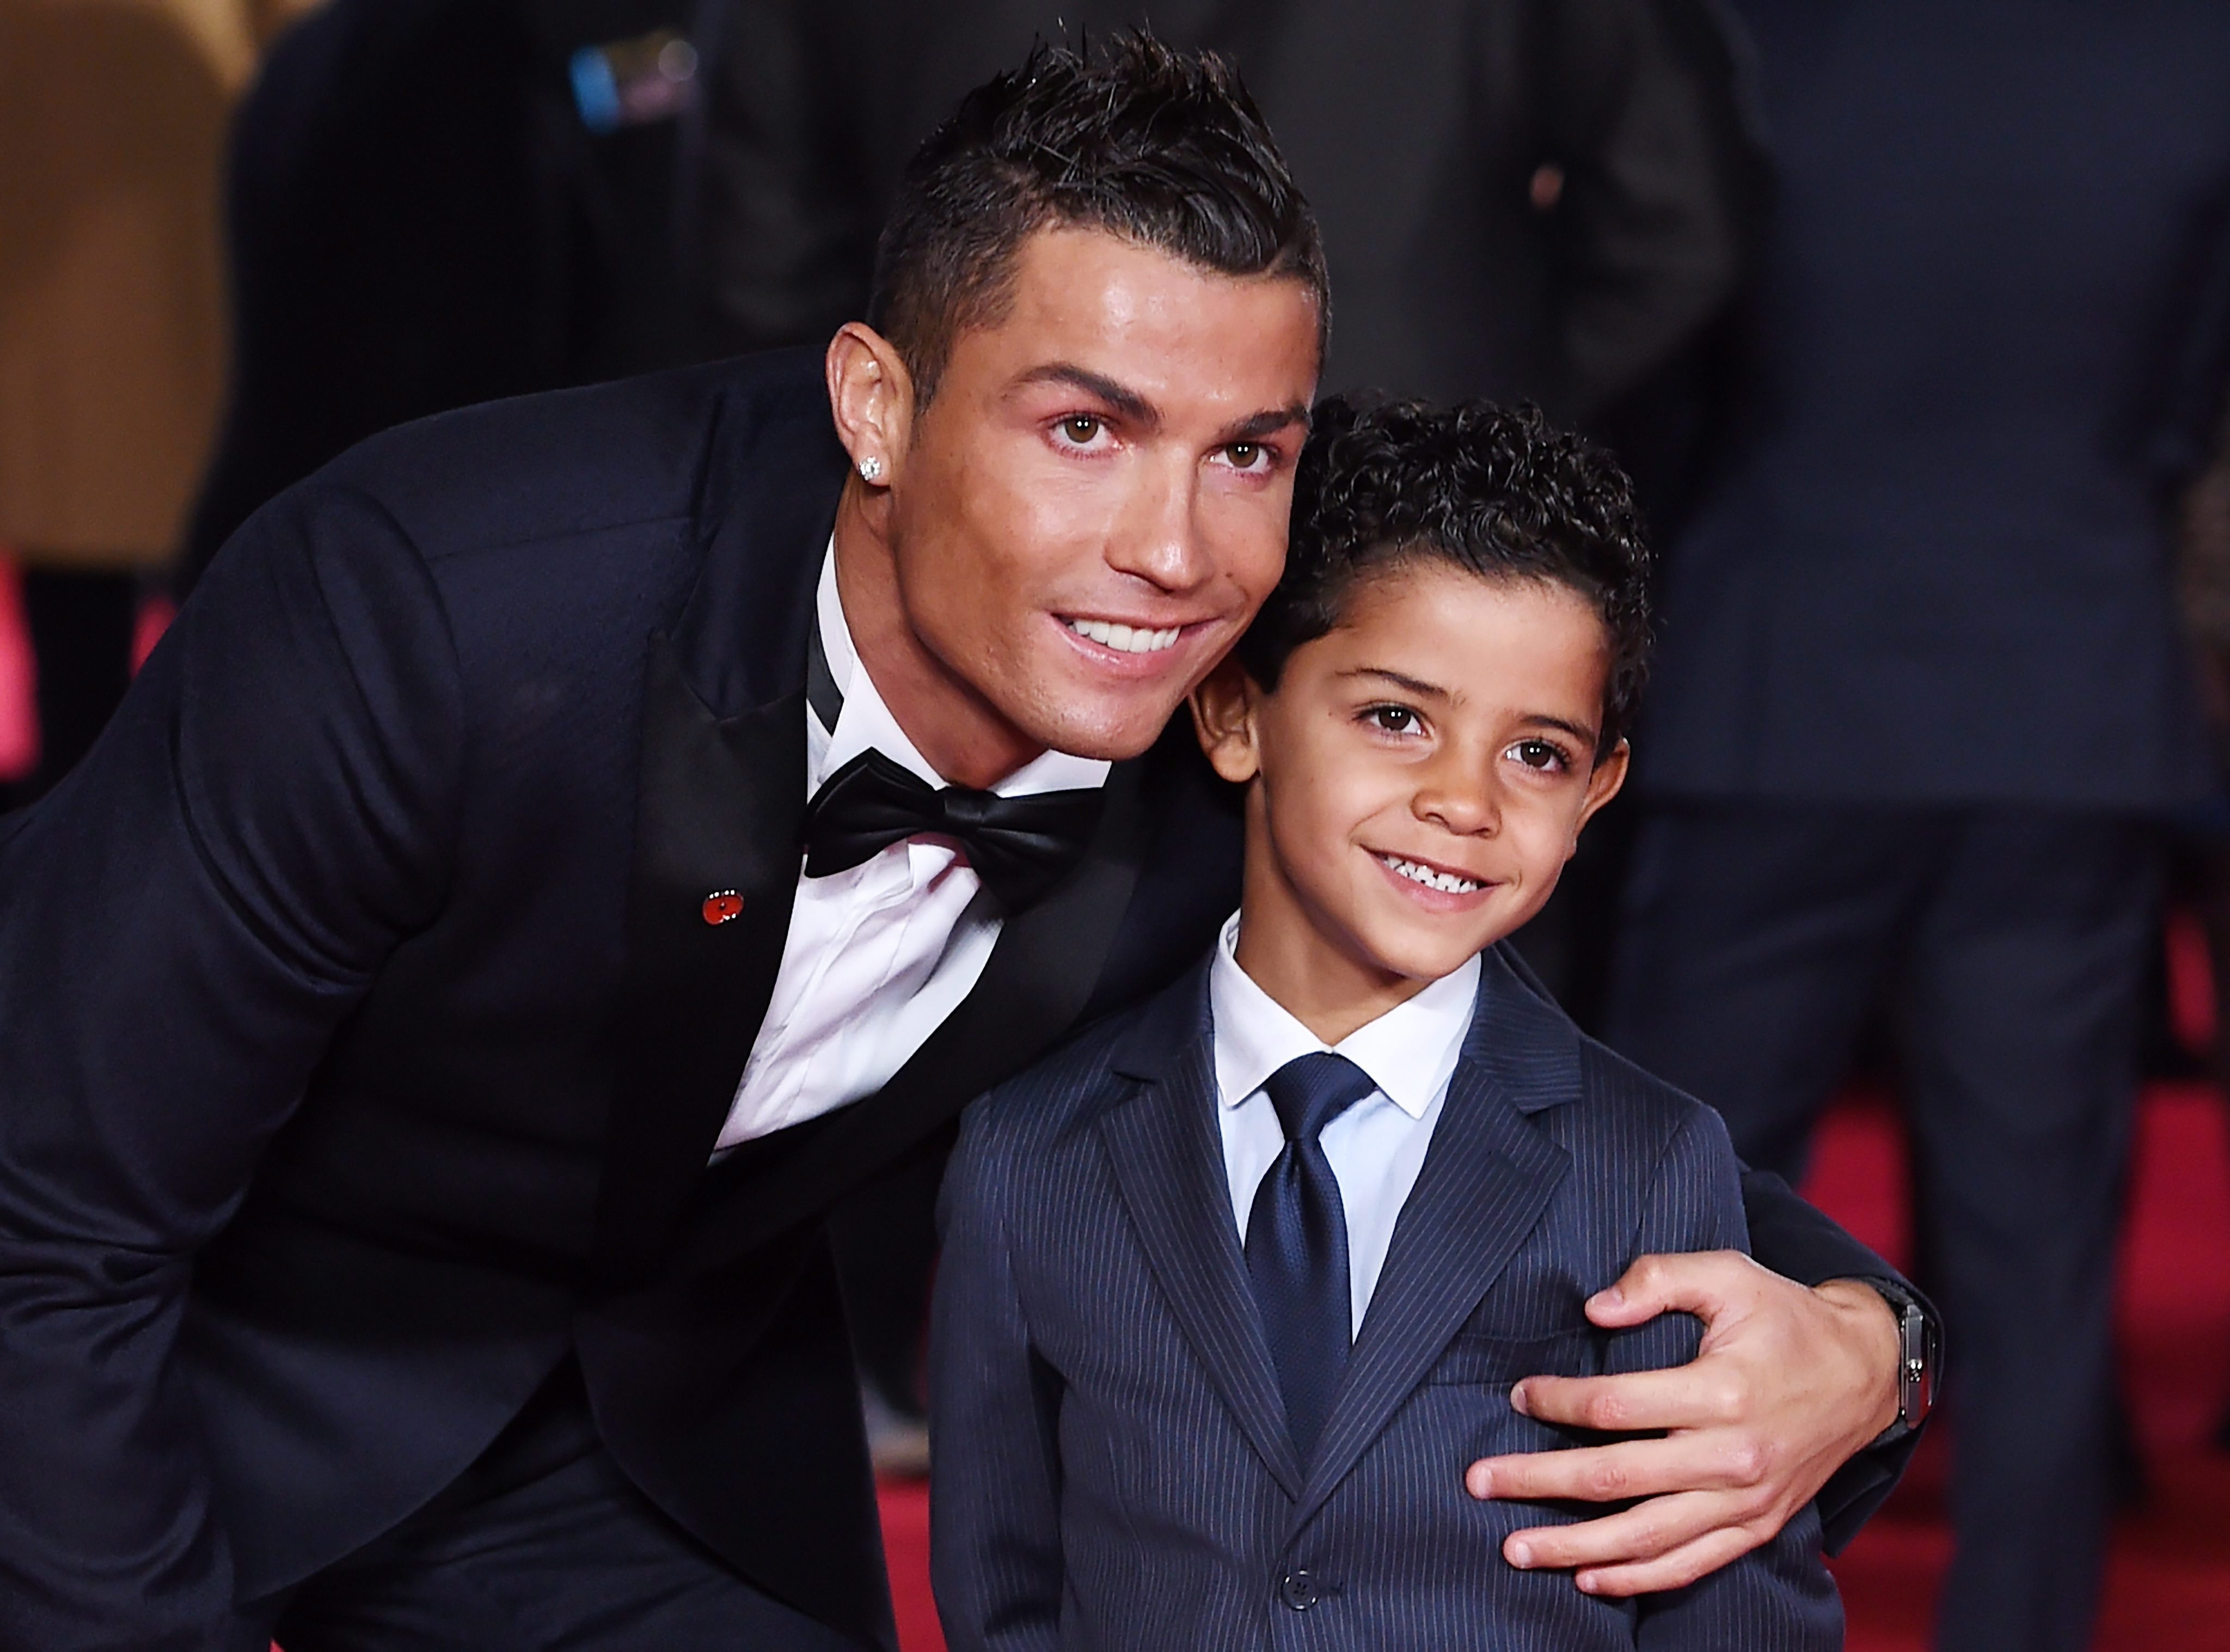 Cristiano Ronaldo kisfia, Cristiano Ronaldo Jr. társaságában a Ronaldo címû életrajzi dokumentumfilmjének világpremierjén. (MTI/EPA/Facundo Arrizabalaga)